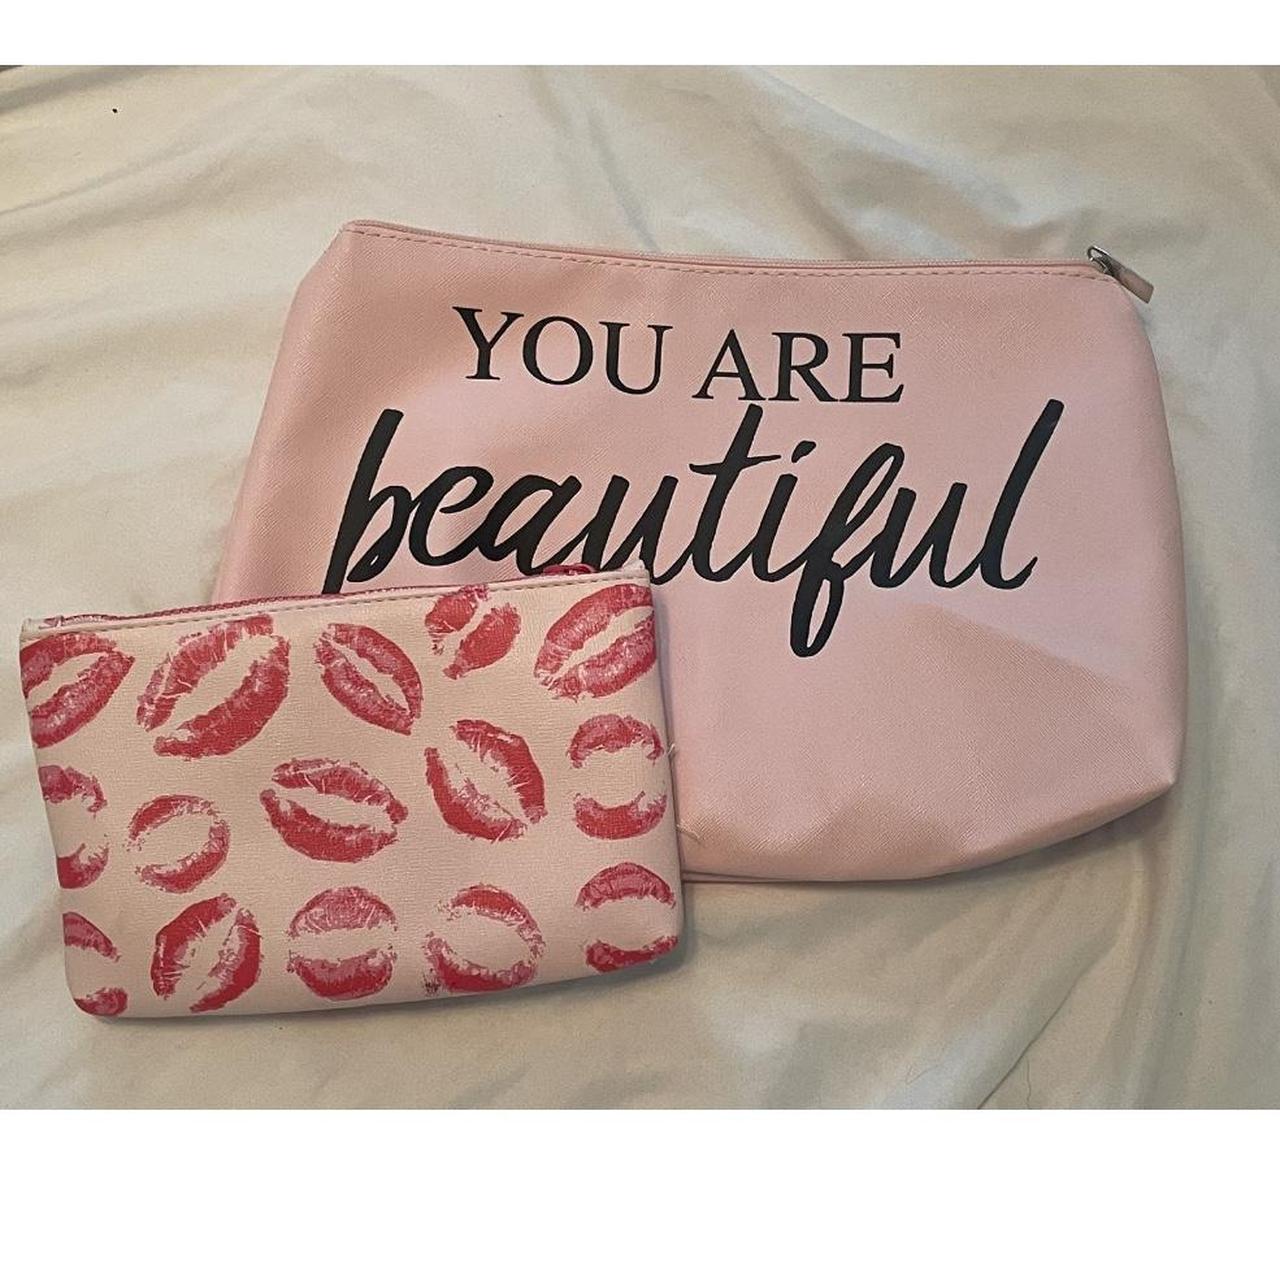 Victoria's Secret makeup bag NWT 8.5 x - Depop